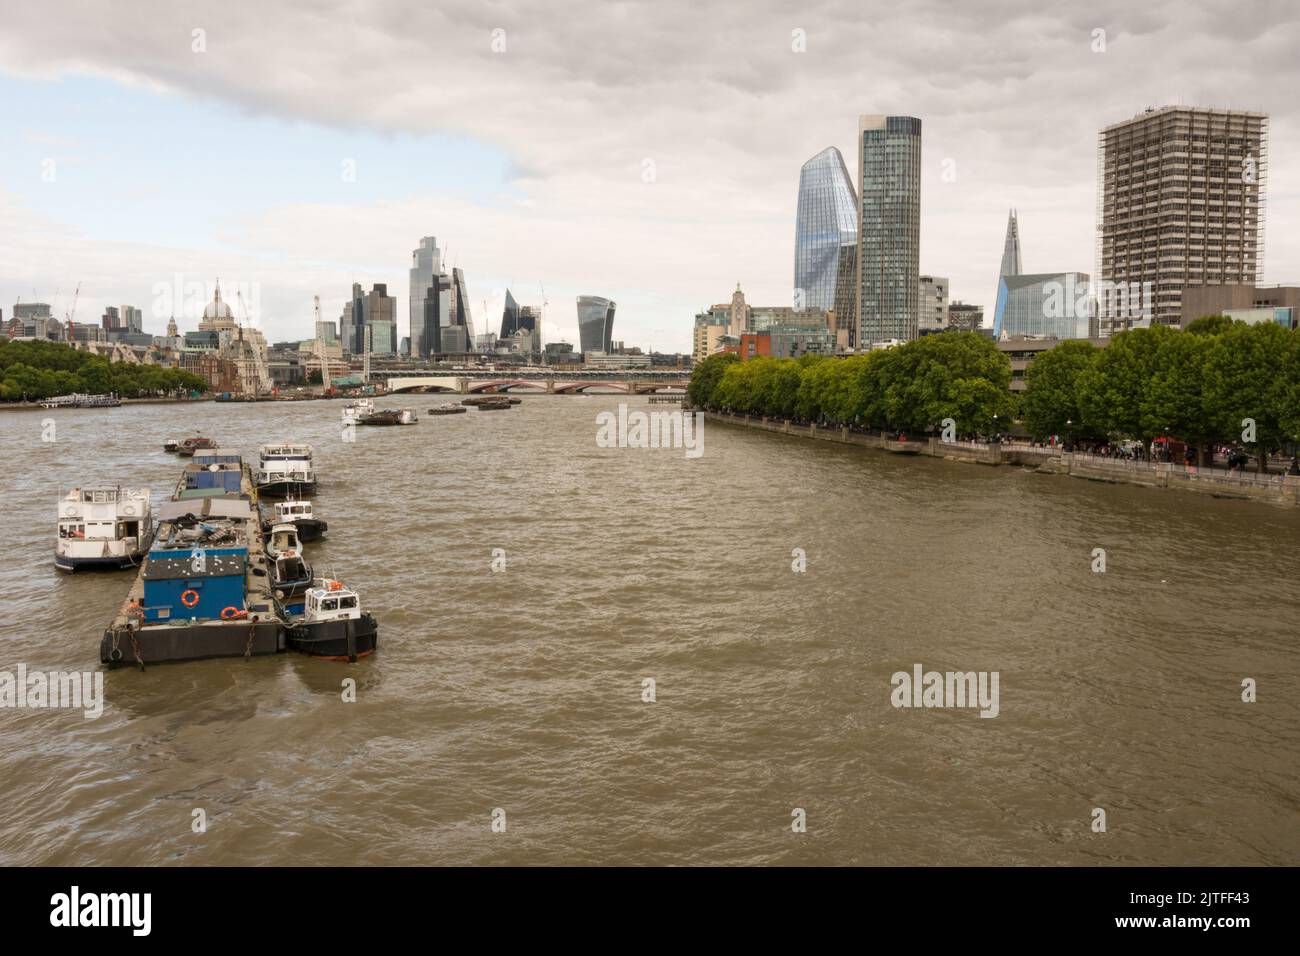 Vue sur la Tamise et les gratte-ciel de la ville de Londres depuis le pont de Waterloo, Londres, Angleterre, Royaume-Uni Banque D'Images